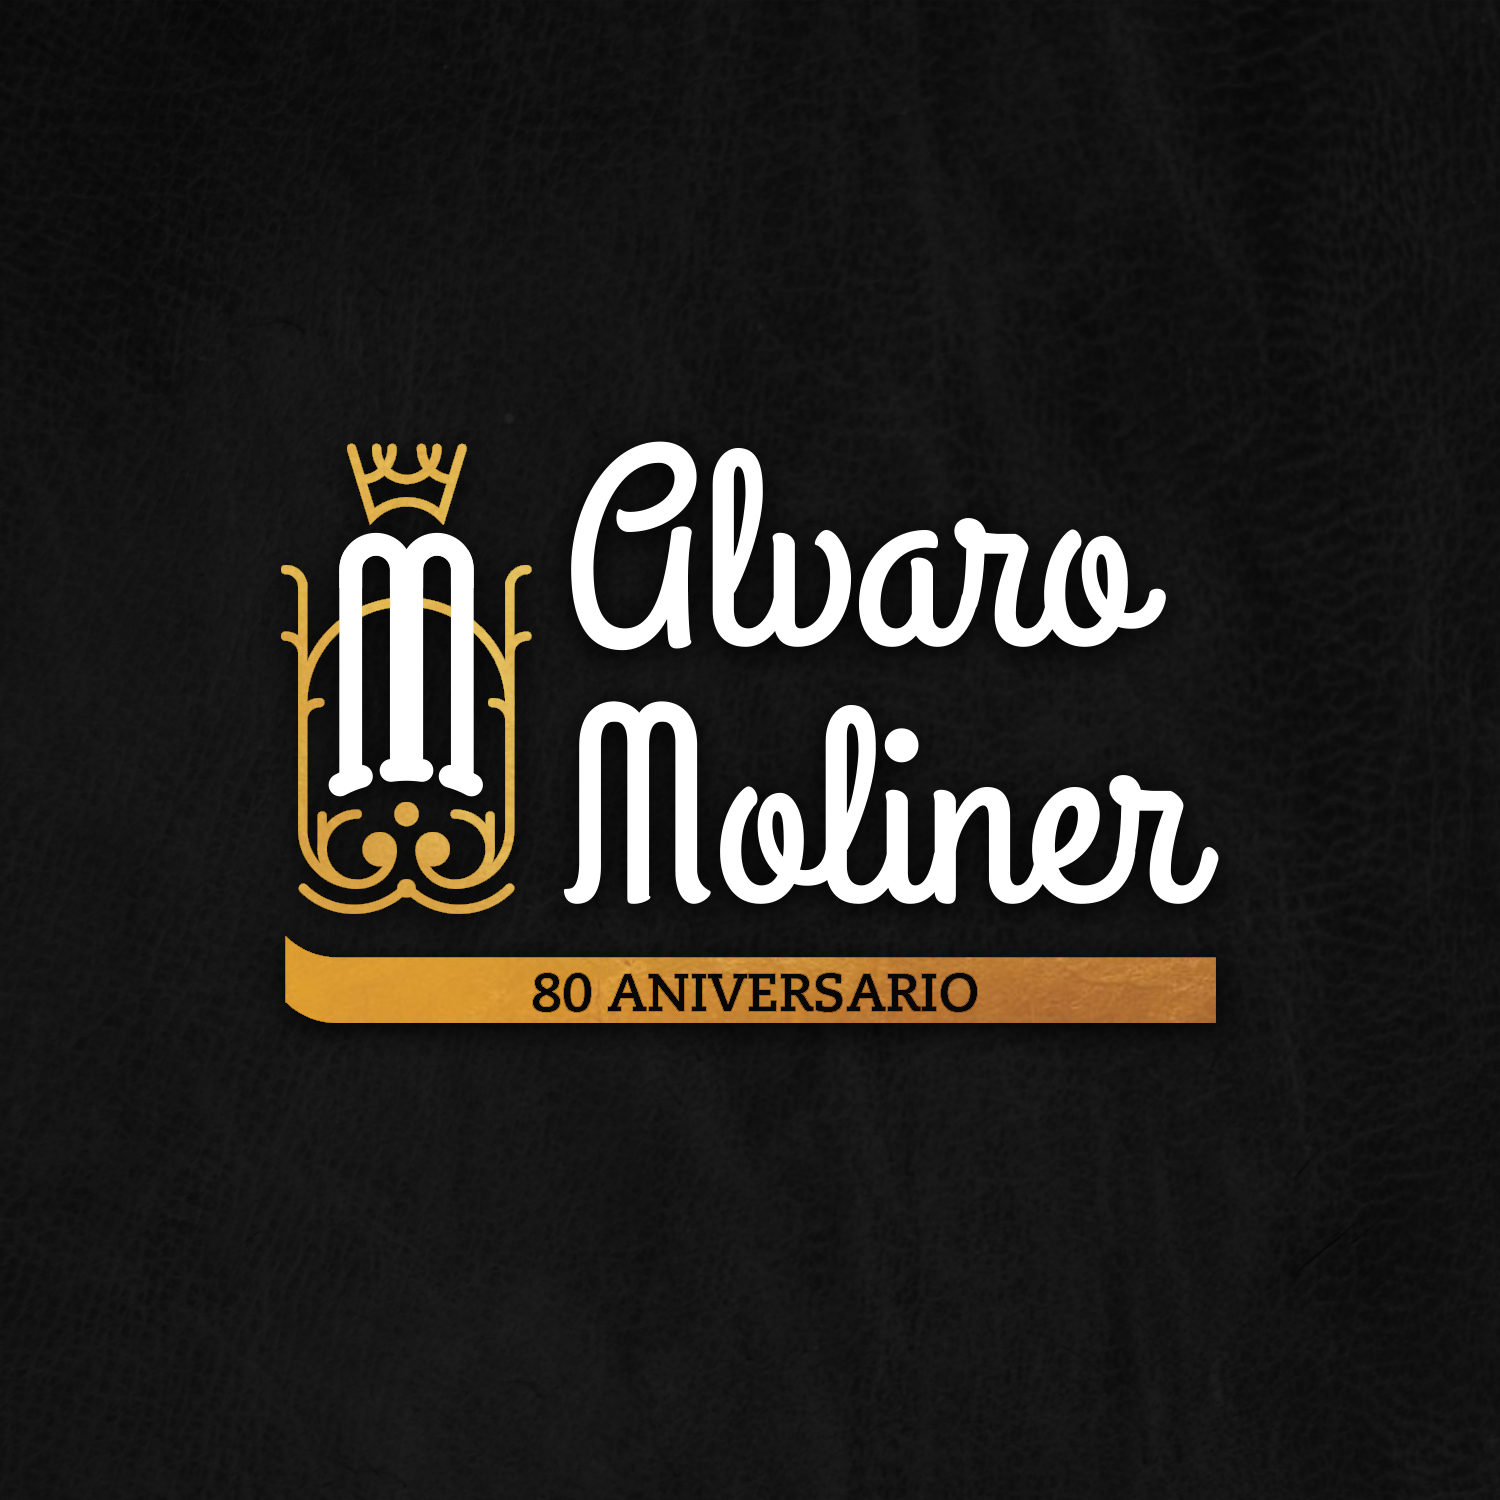 Álvaro Moliner